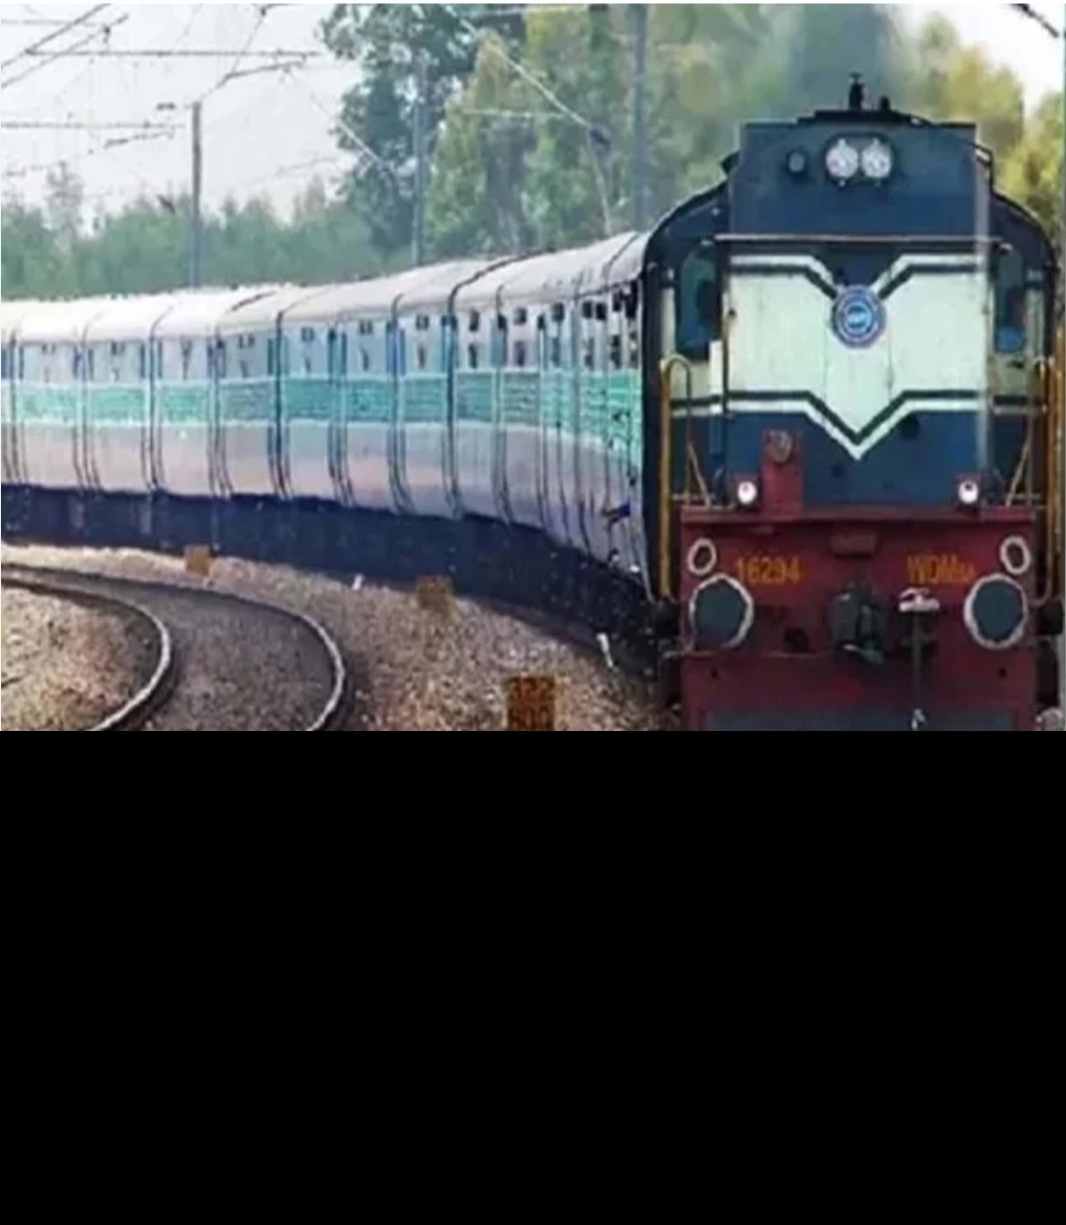 कानपुर-झांसी रूट पर प्रभावित रहेगा कई ट्रेनों का संचालन